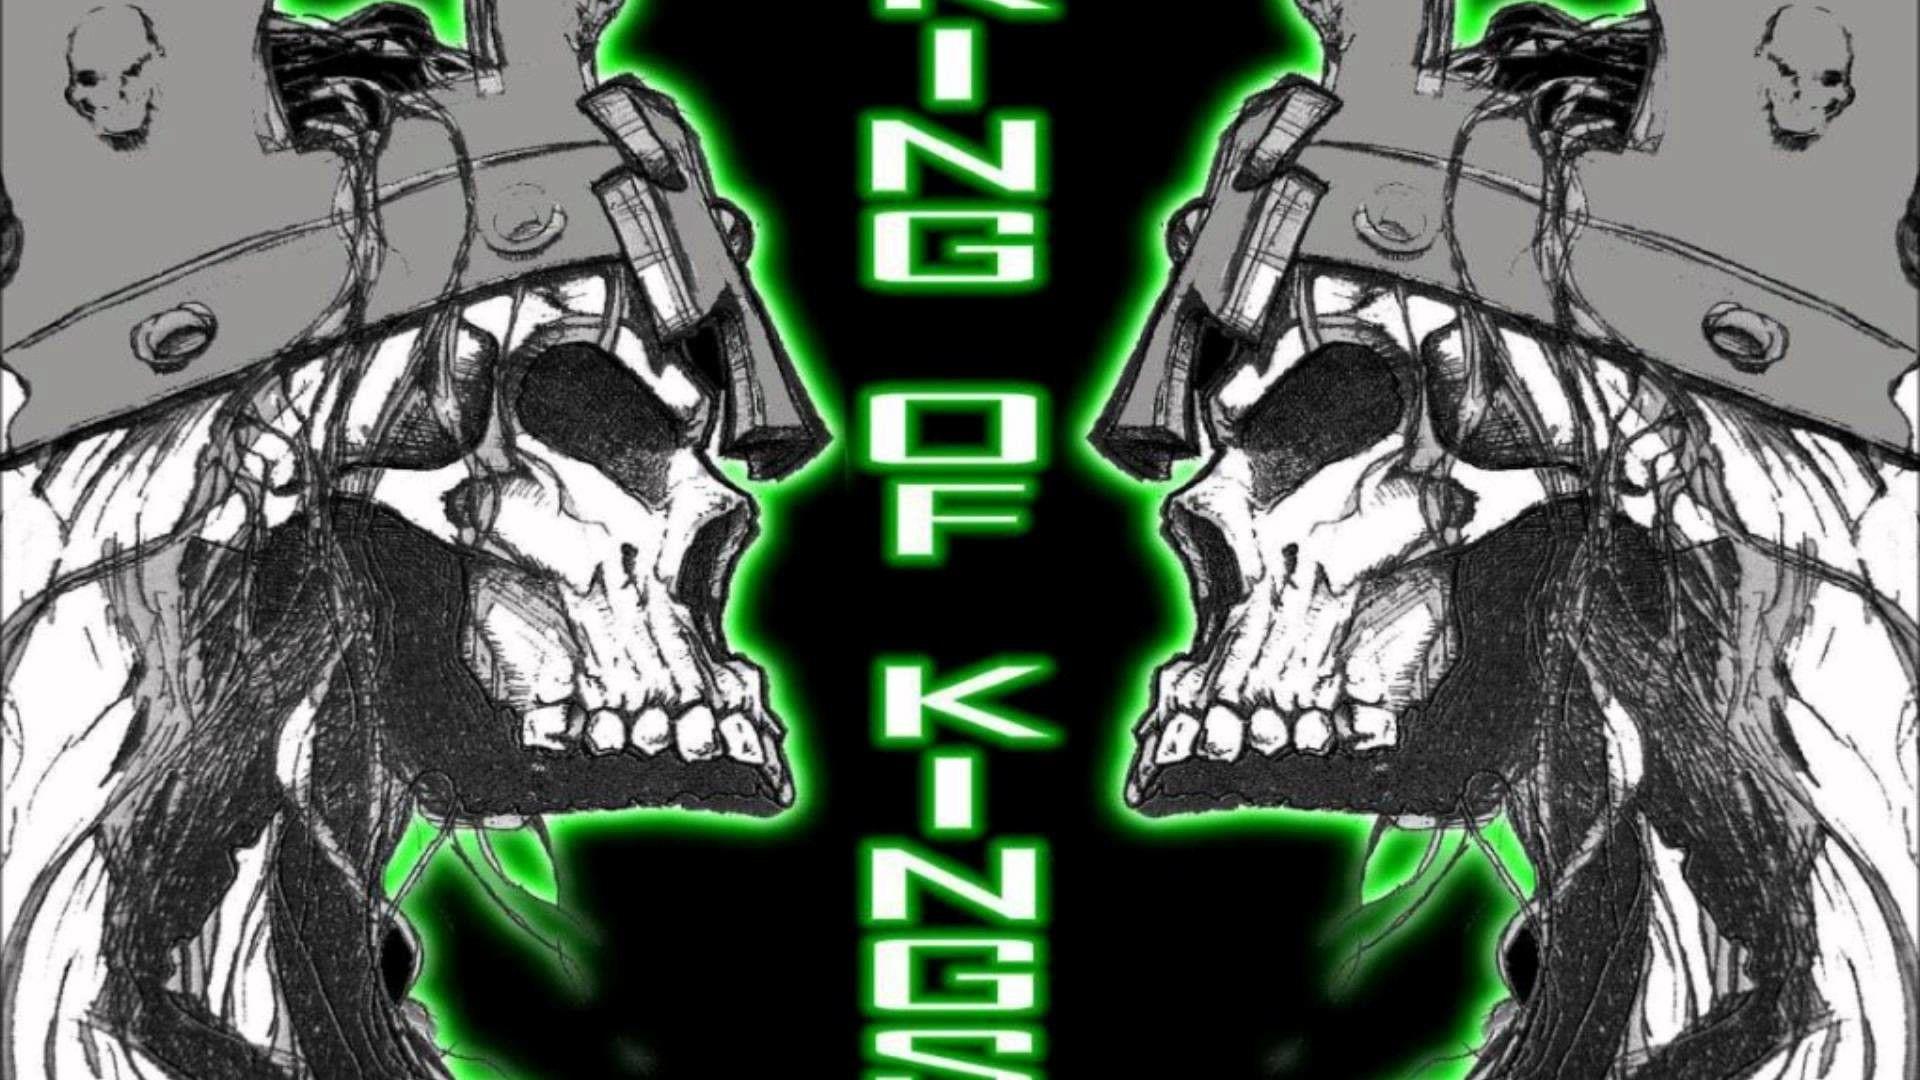 Triple H Skull King Logo - Triple H King of Kings Wallpaper ·①